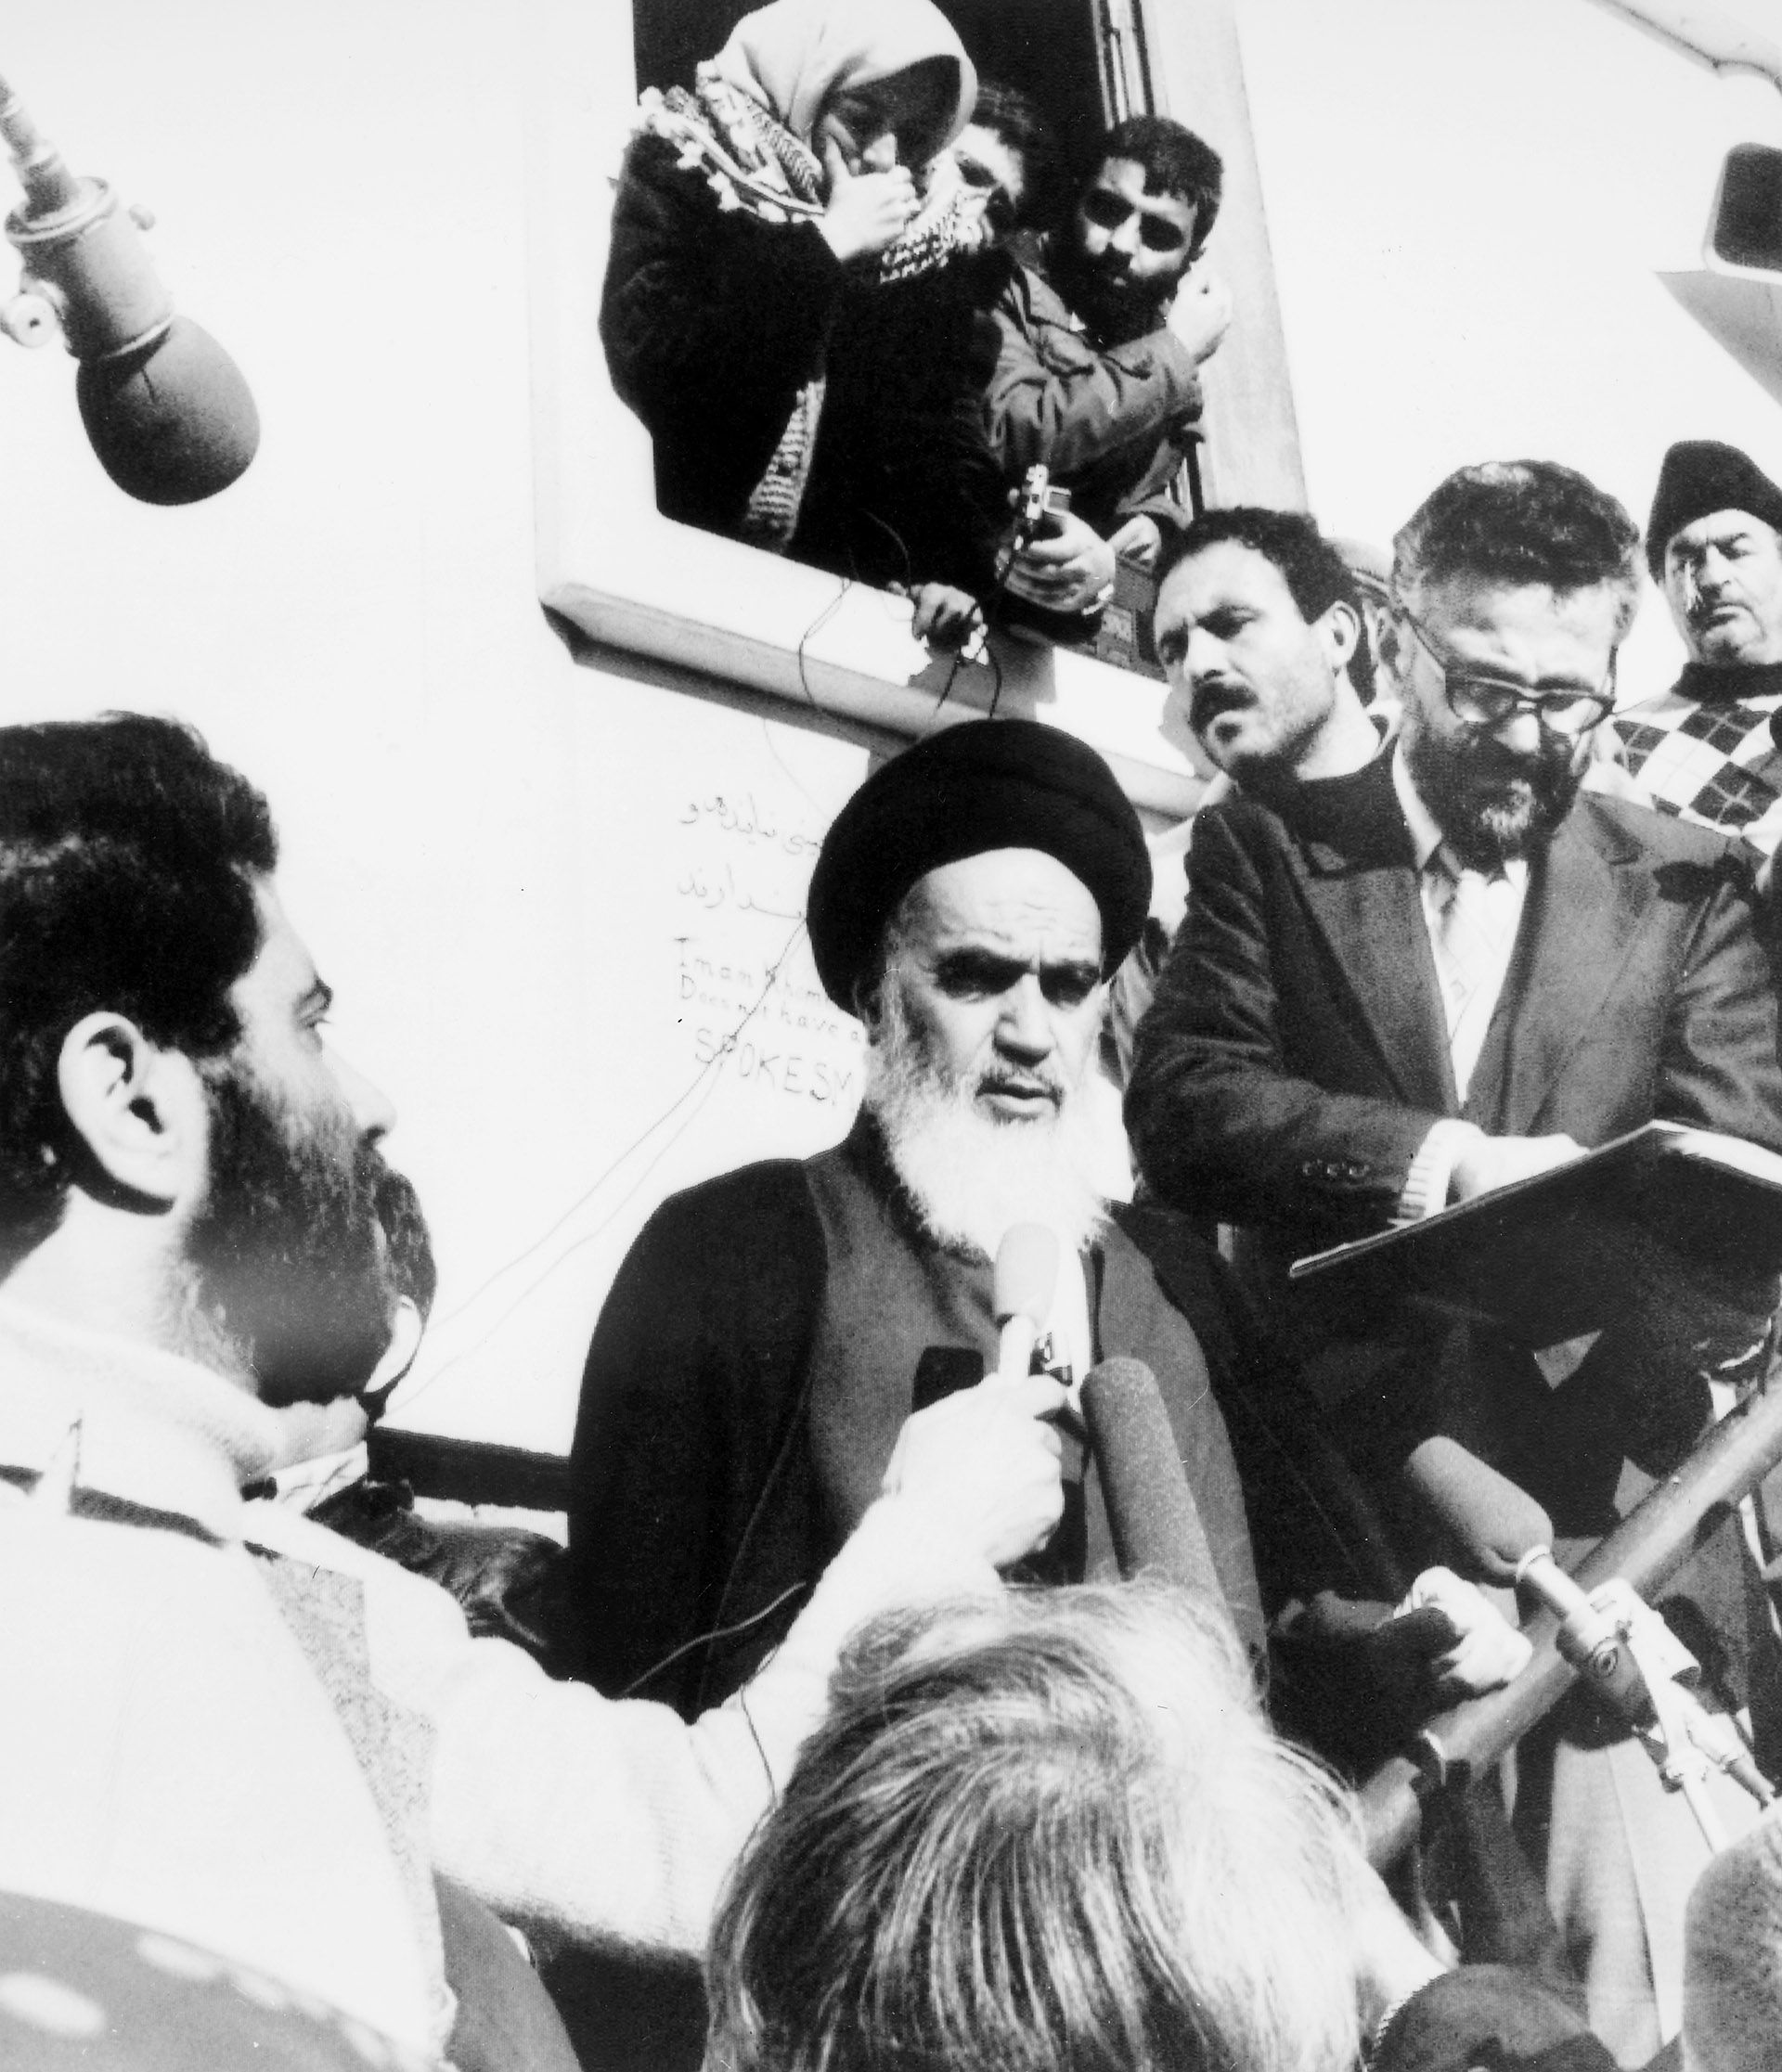 El ayatollah Khomeini se dirige a sus partidarios fuera de su residencia en Neauphle-Le-Chateau, Francia, con motivo de la salida del sha Mohammed Reza Pahlavi de Irán, 16 de enero de 1979 (Foto de Granger/ Shutterstock (8699262a))